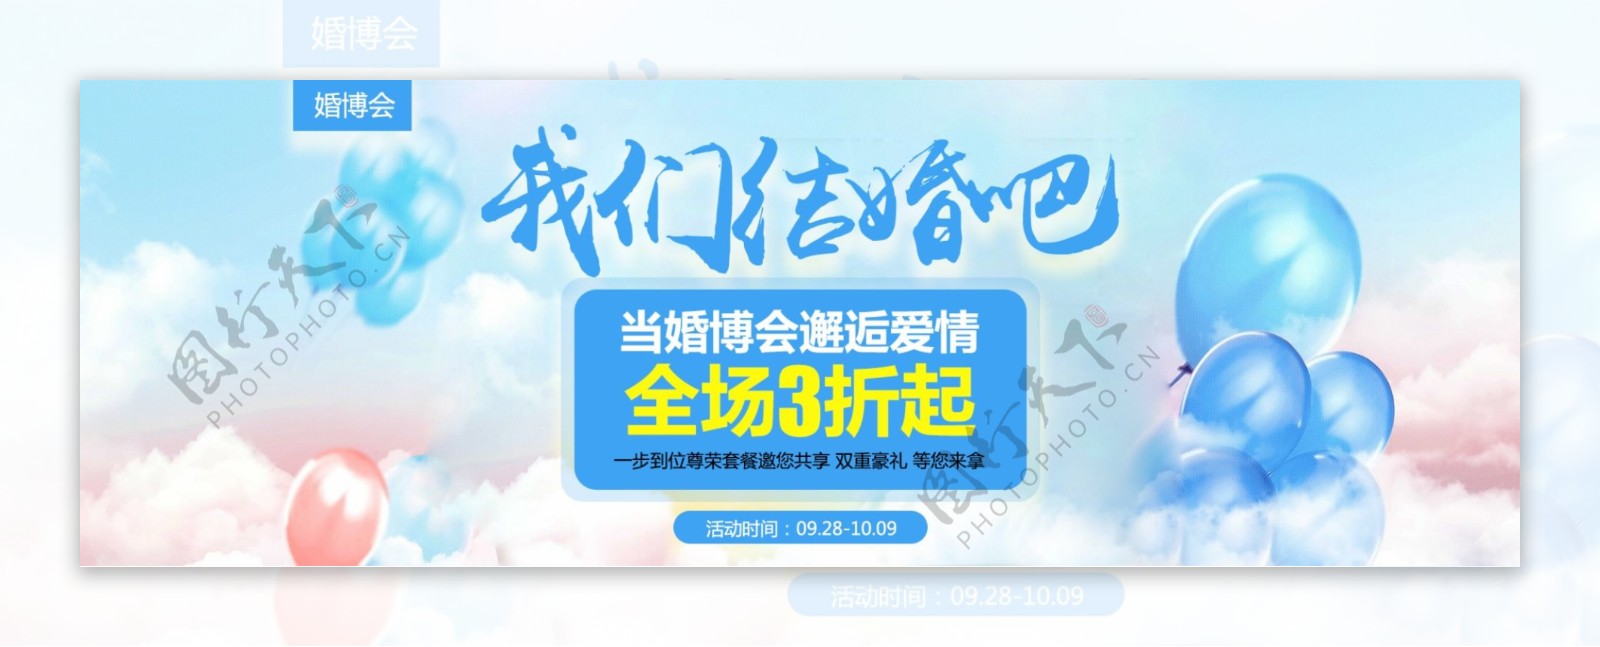 蓝色婚纱摄影秋季婚博会浪漫天猫海报banner